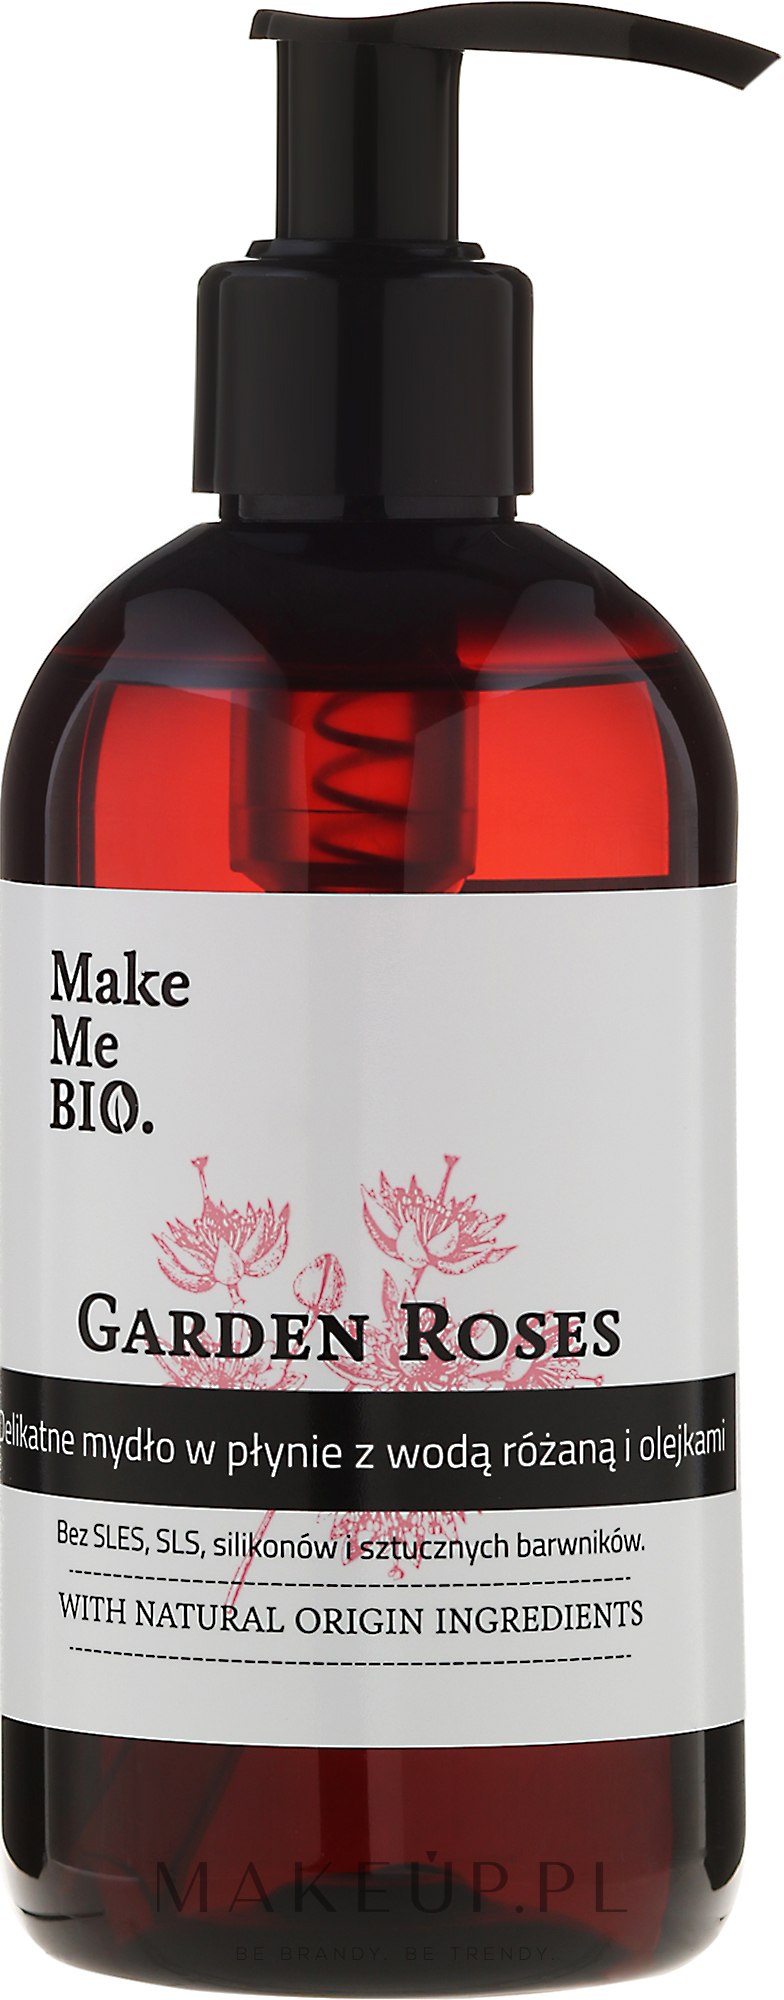 Delikatne mydło w płynie z wodą różaną i olejami - Make Me Bio Garden Roses — фото 250 ml